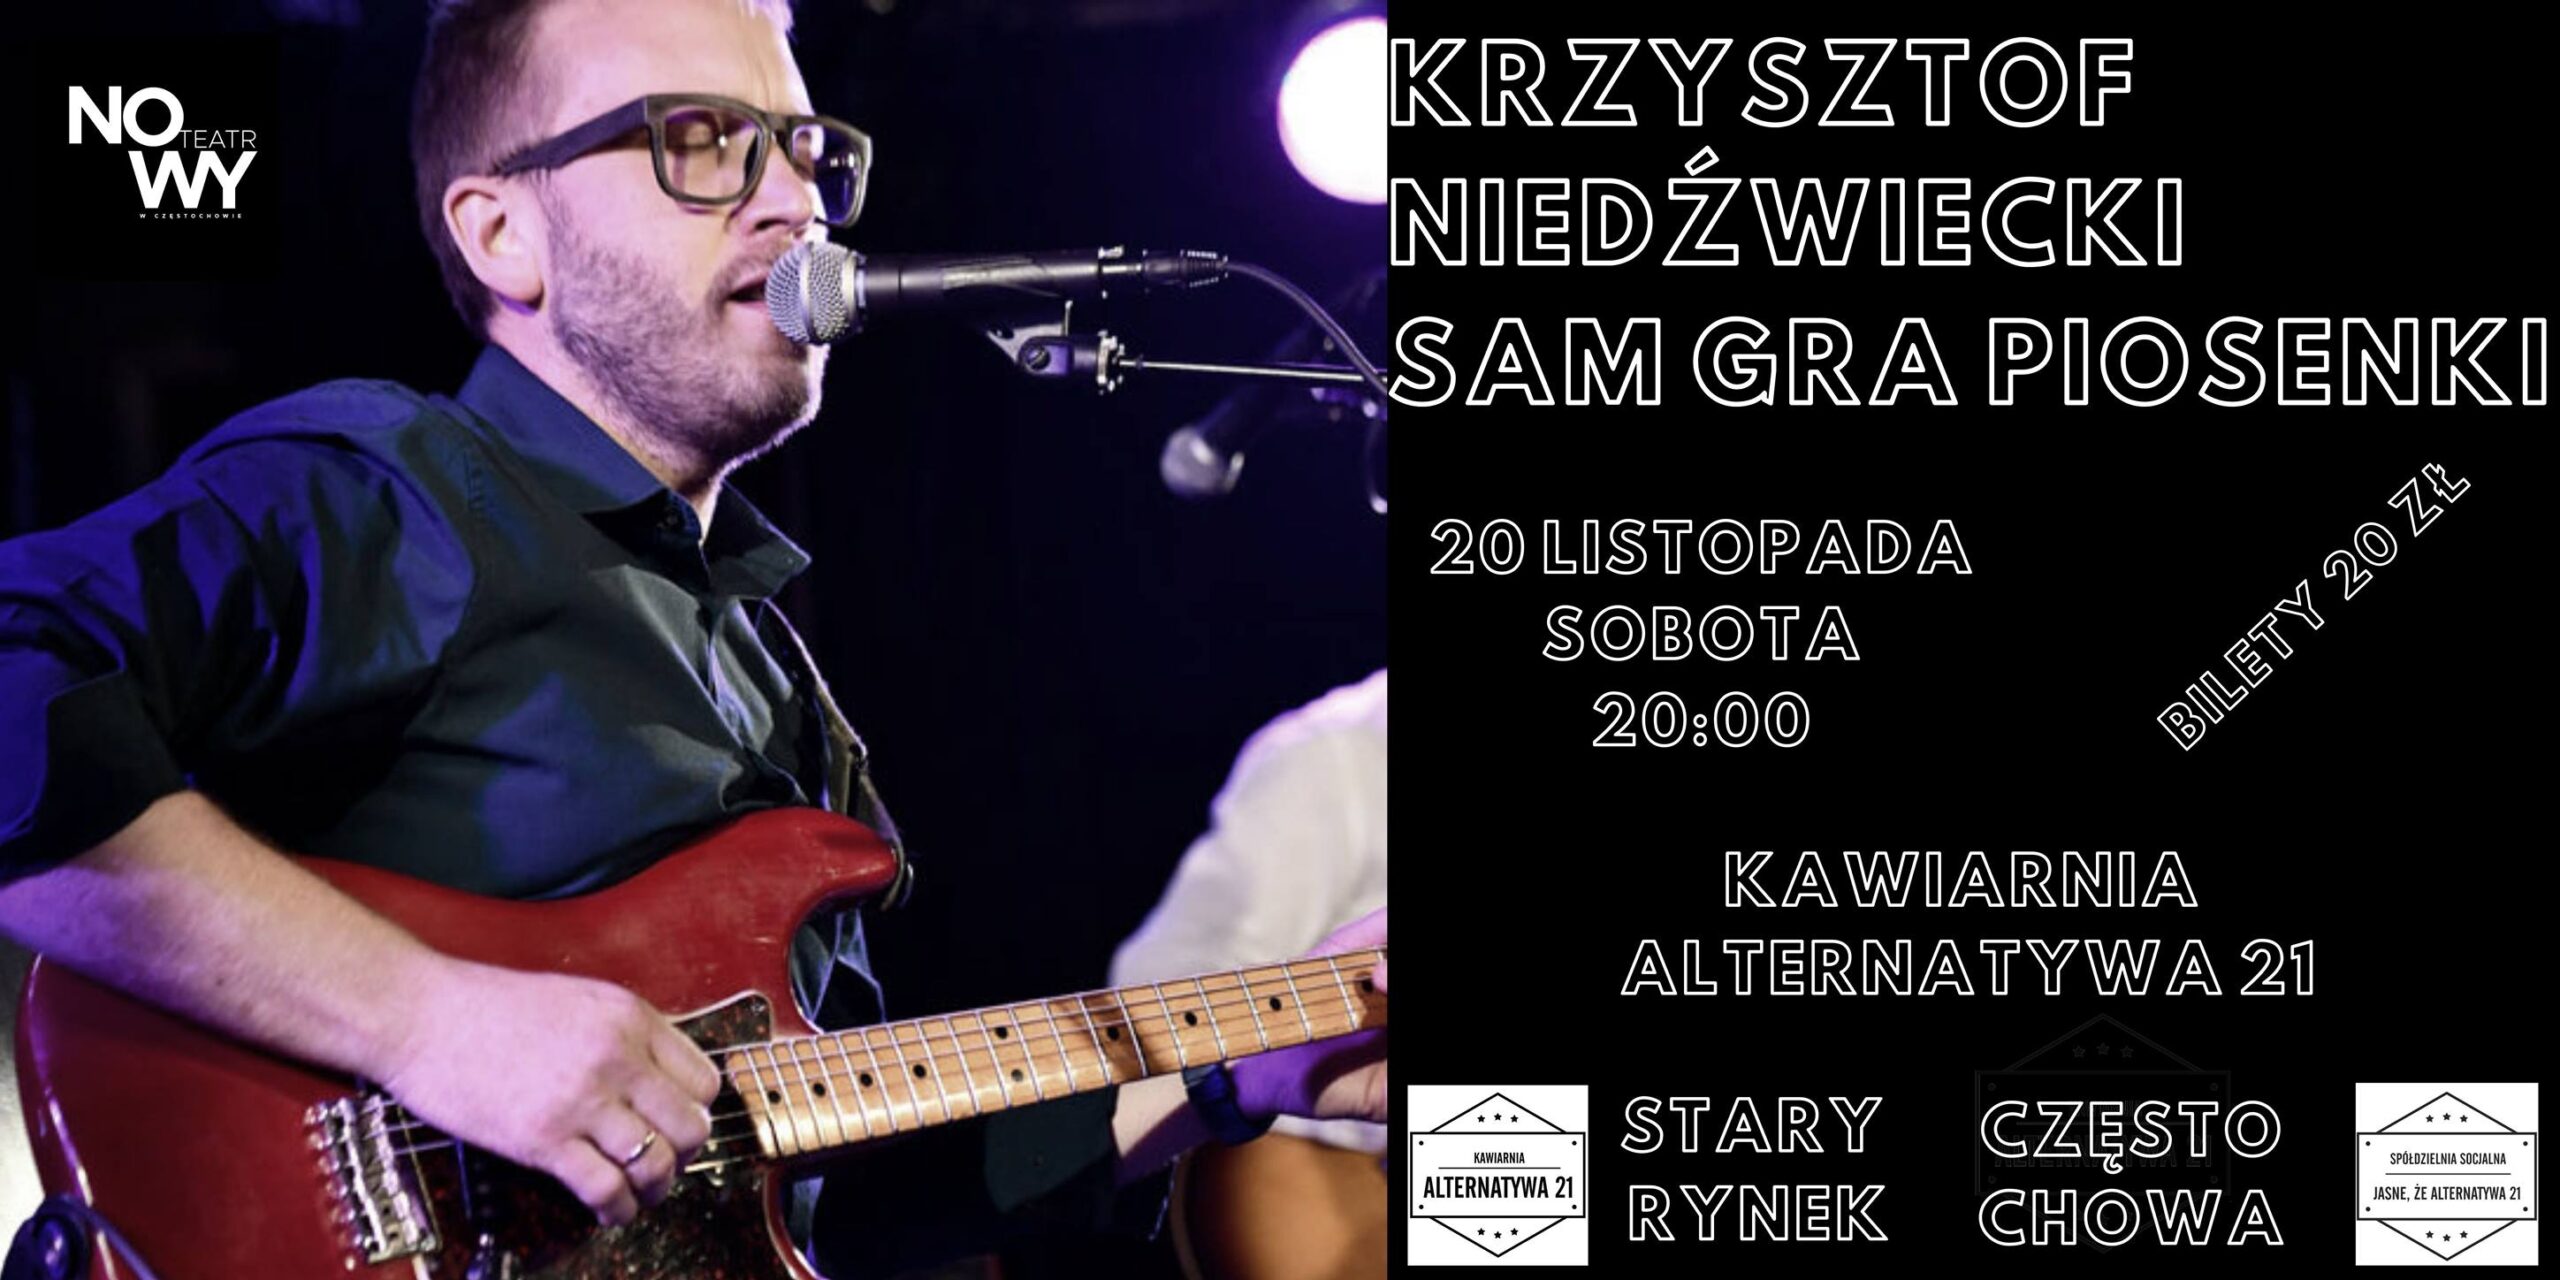 Krzysztof Niedźwiecki sam gra piosenki w częstochowskiej Alternatywie 21 6